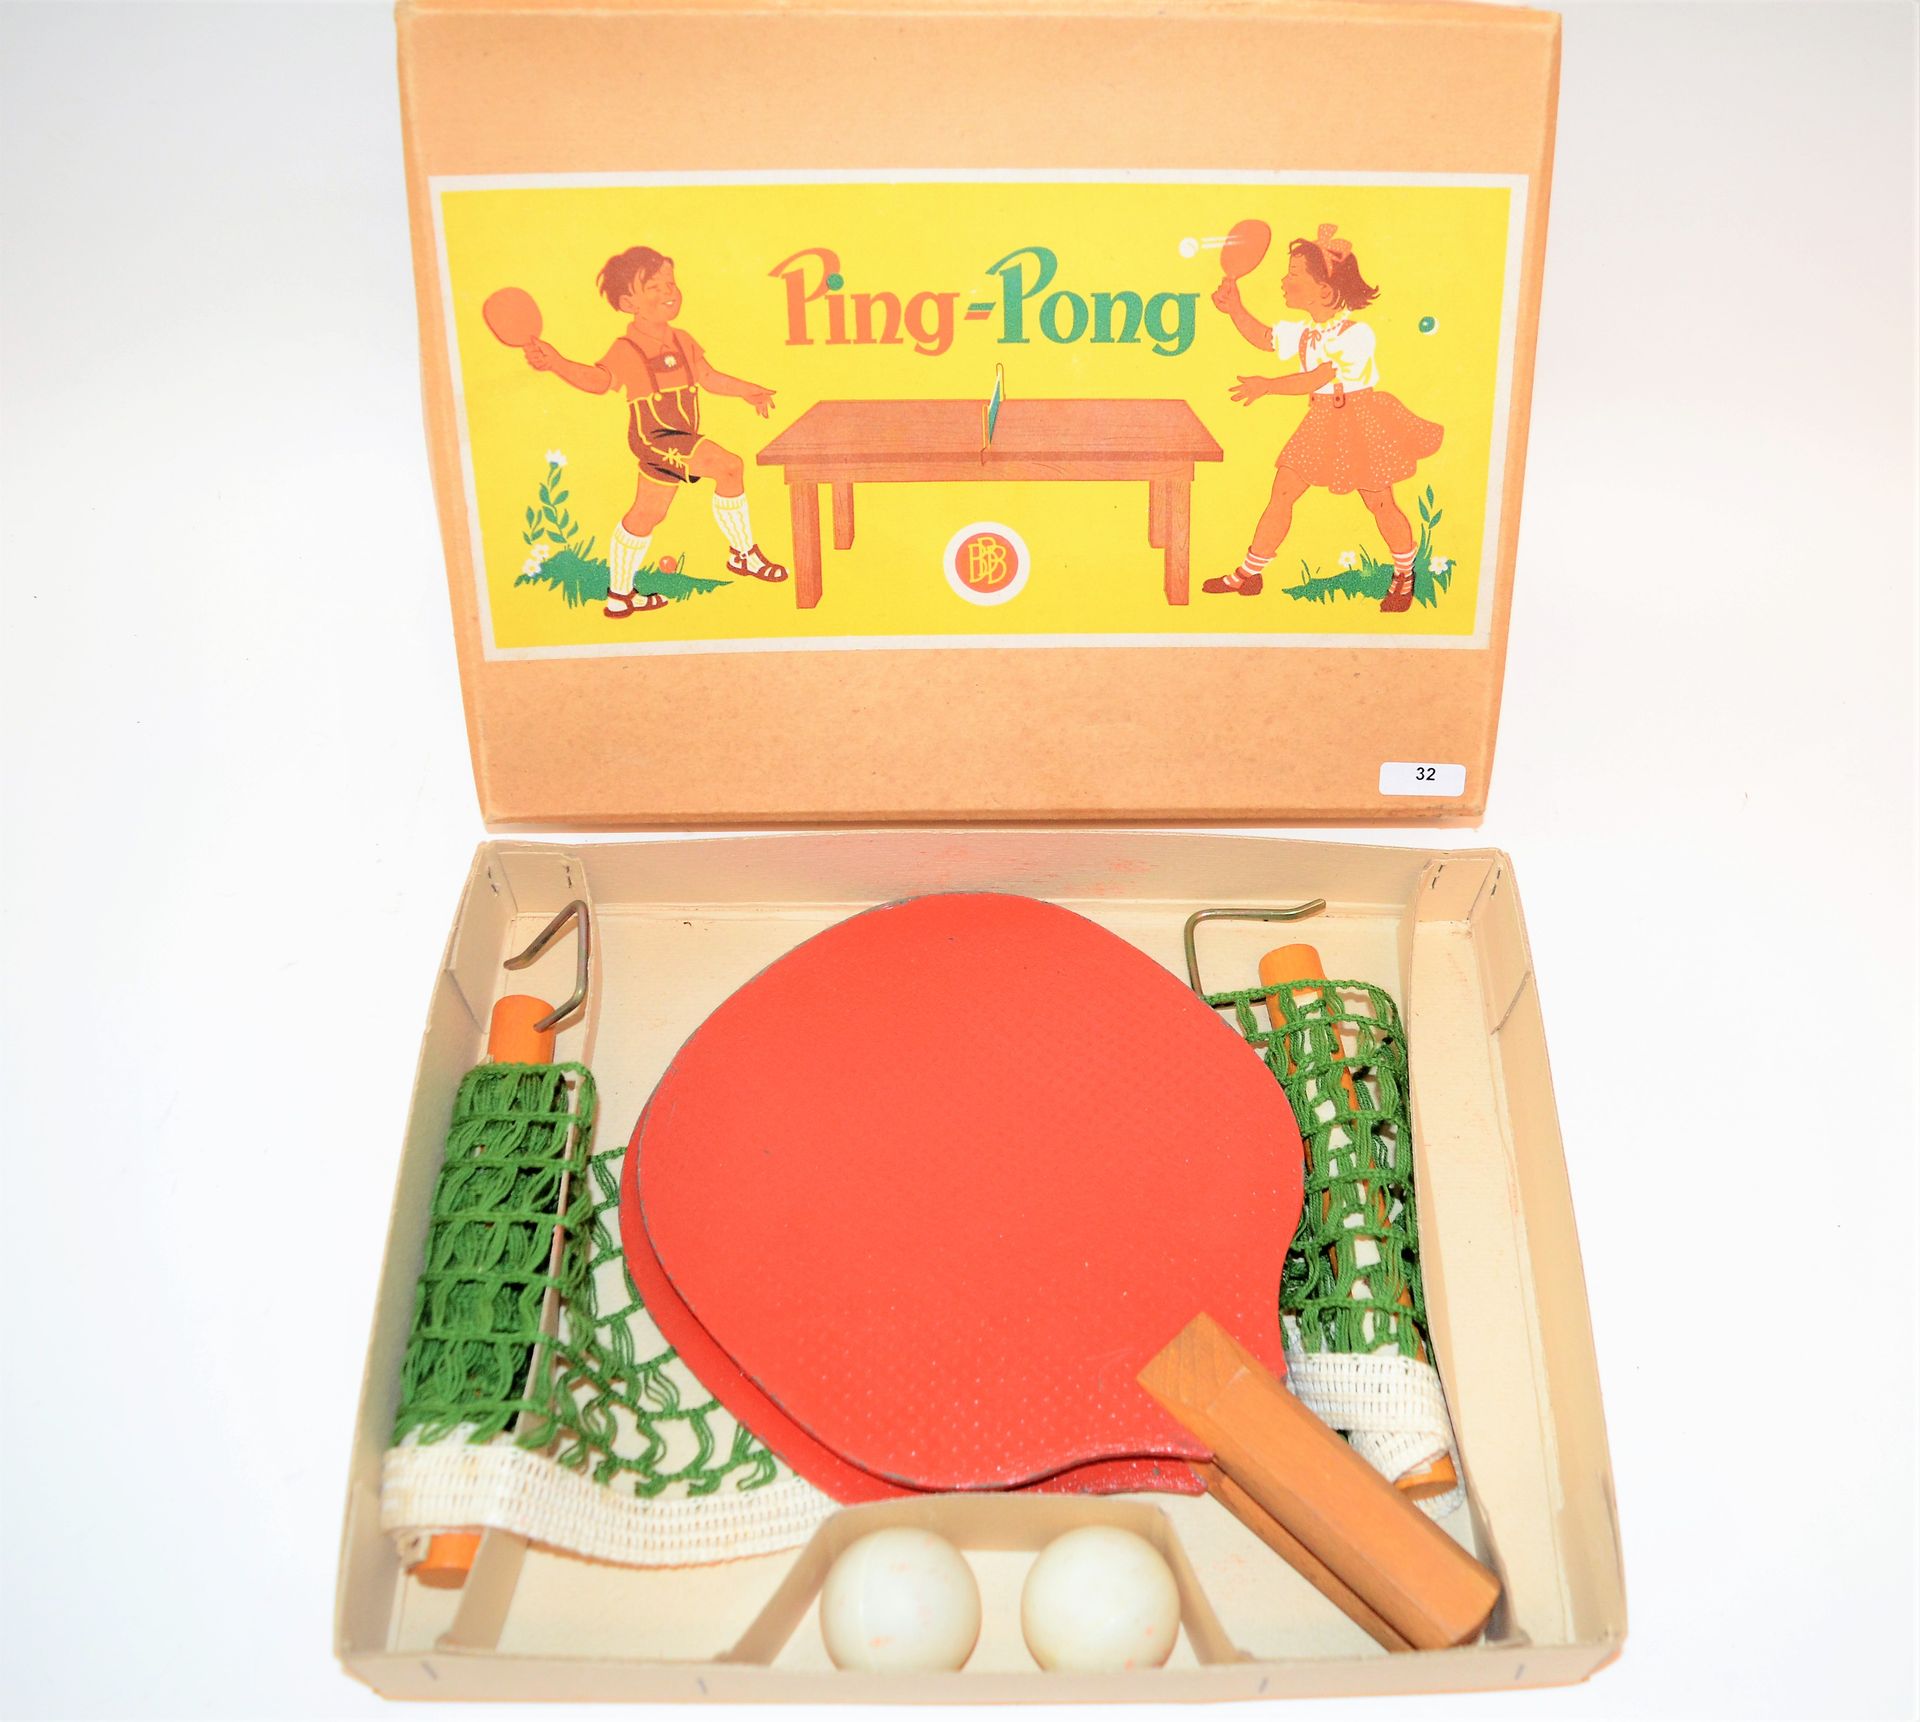 Null Gioco di ping-pong in scatola, completo (due racchette, due palle, rete).